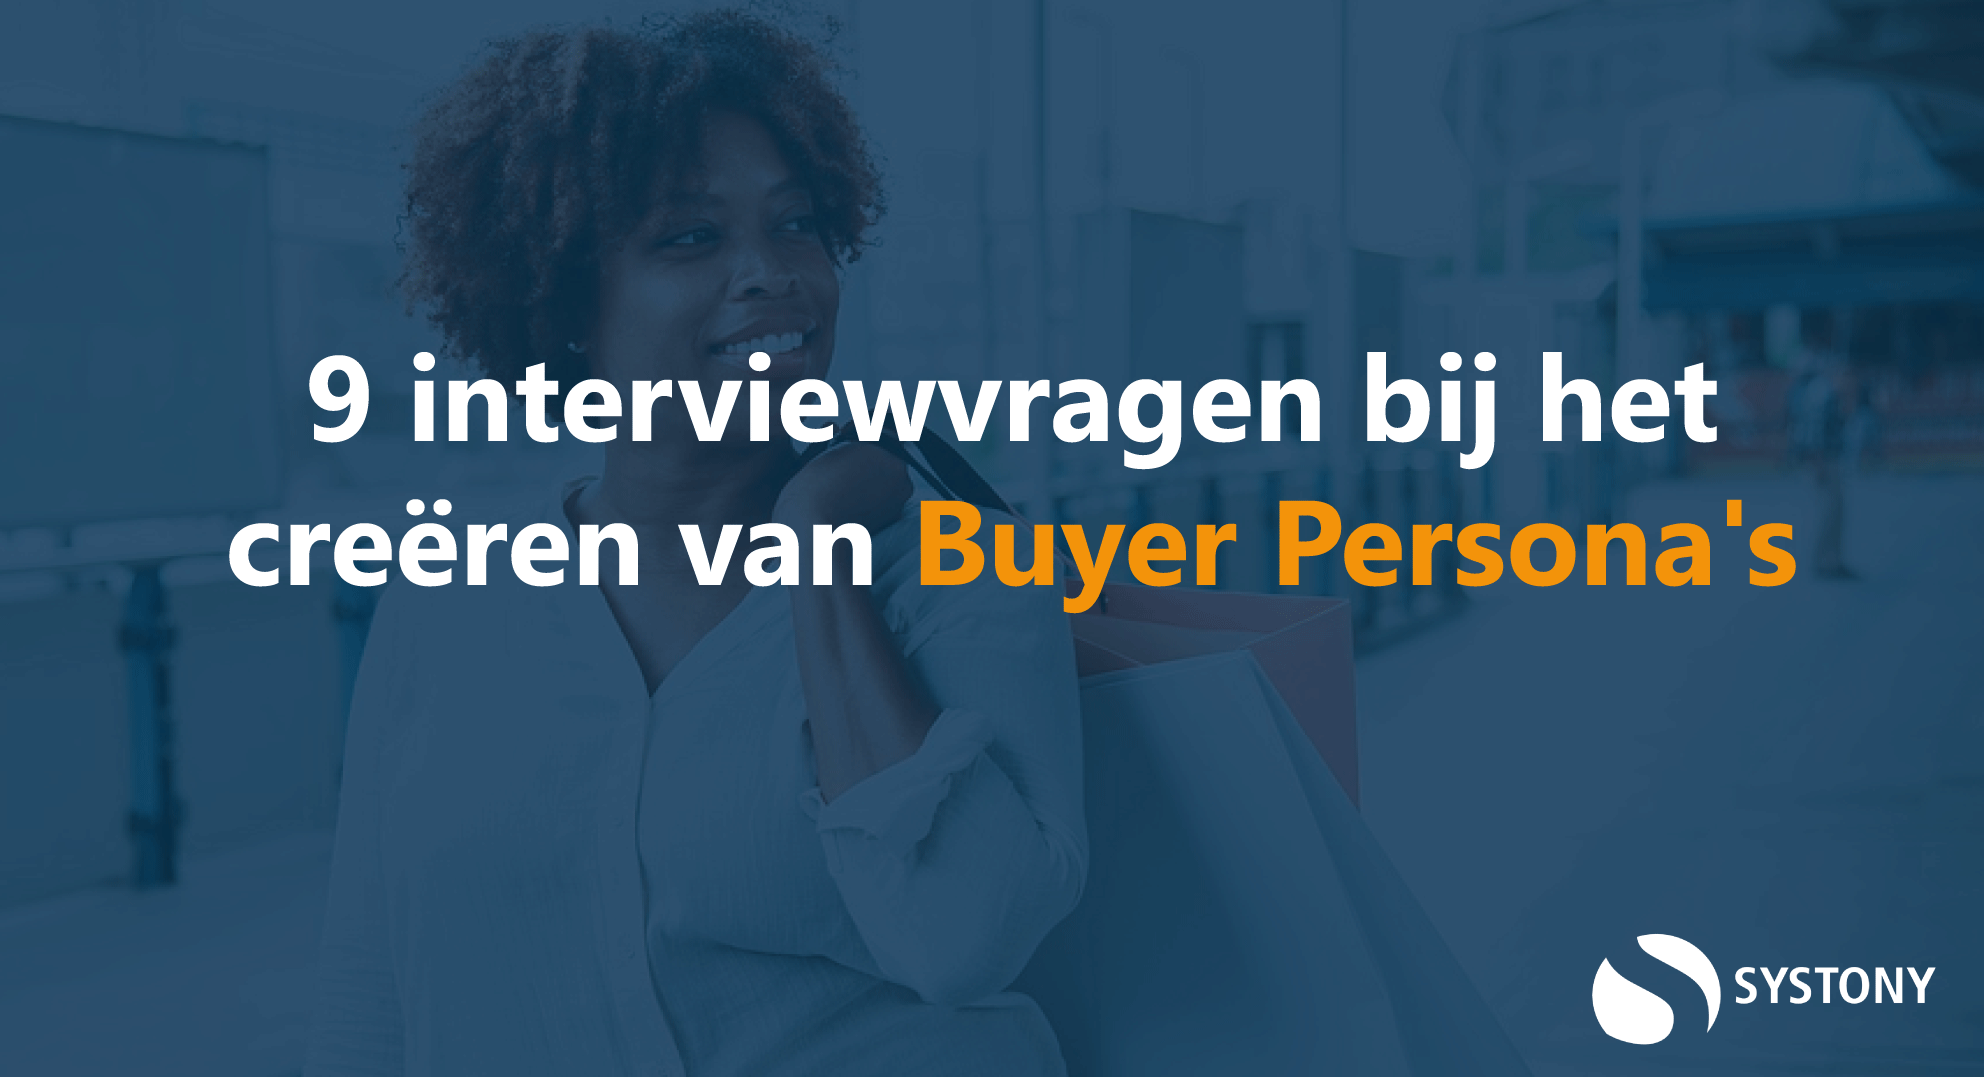 buyer_persona_interviewvragen